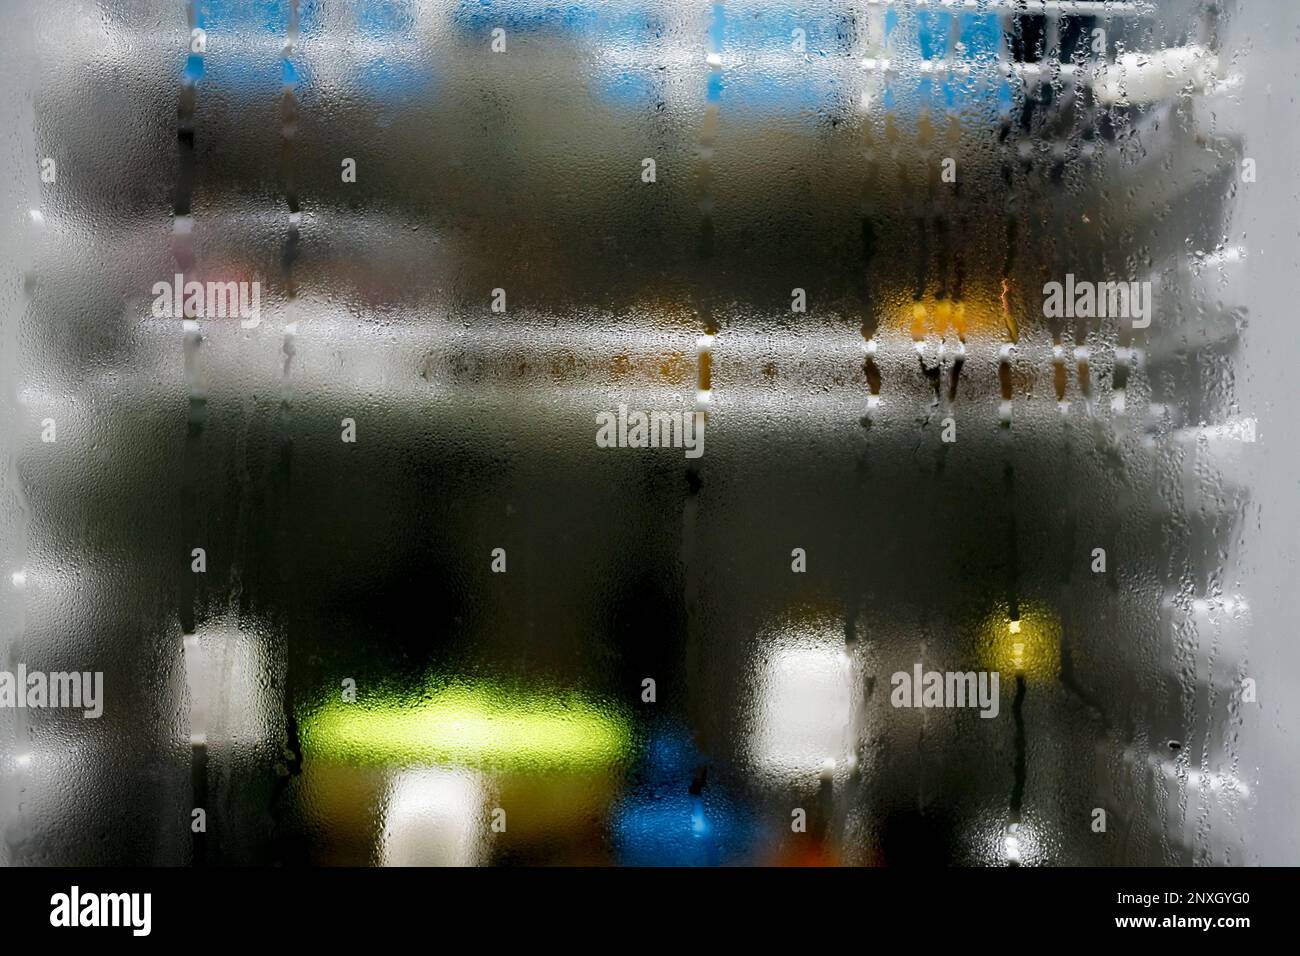 Ghiaccio in frigo immagini e fotografie stock ad alta risoluzione - Alamy